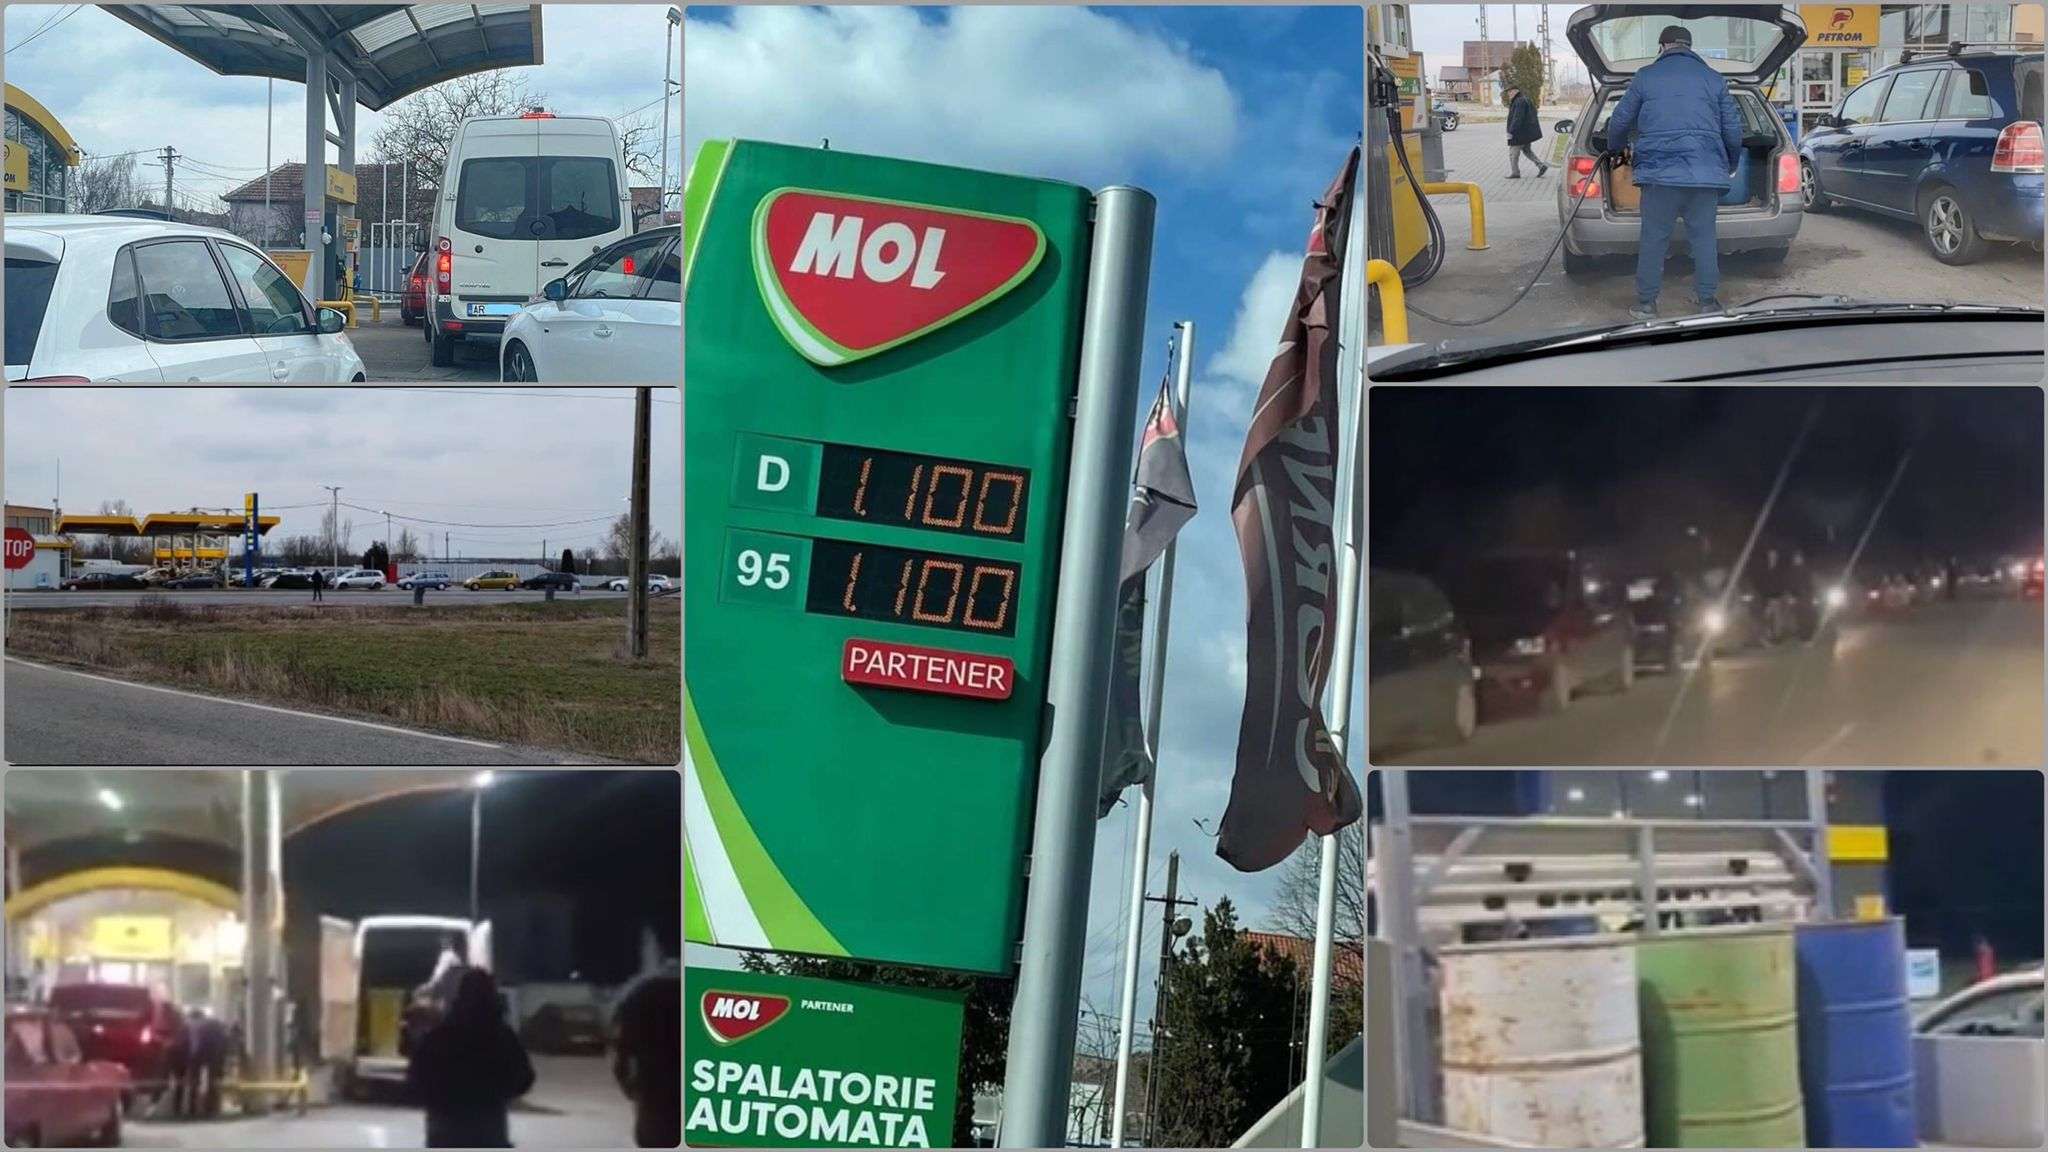 [ACTUALIZARE] Efectele FENOMENULUI „MOL-Beiuș” la Arad: ISU – 91 de stații de alimentare cu carburanți controlate, 200 de avertismente și 64 de amenzi în cuantum de 159.500 lei. Garda de Mediu a controlat 33 de benzinării și a aplicat amenzi în valoare de 125.000 lei